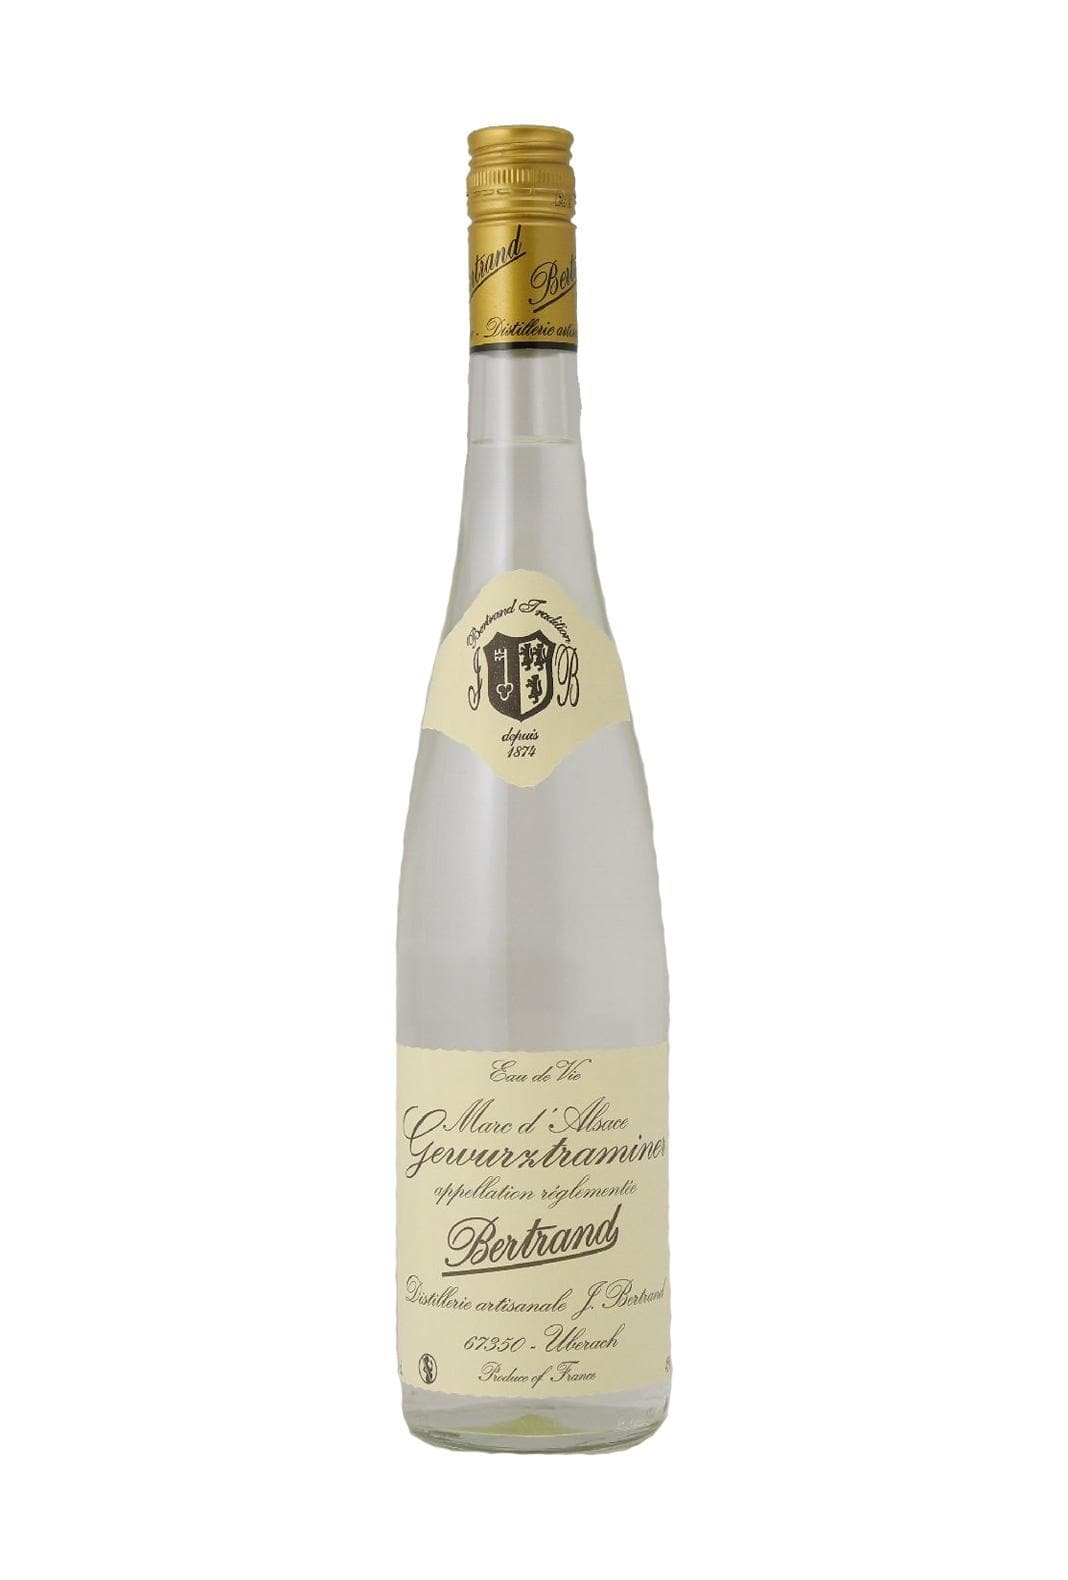 Bertrand Marc de Gewurztraminer 45% 700ml | Liqueurs | Shop online at Spirits of France